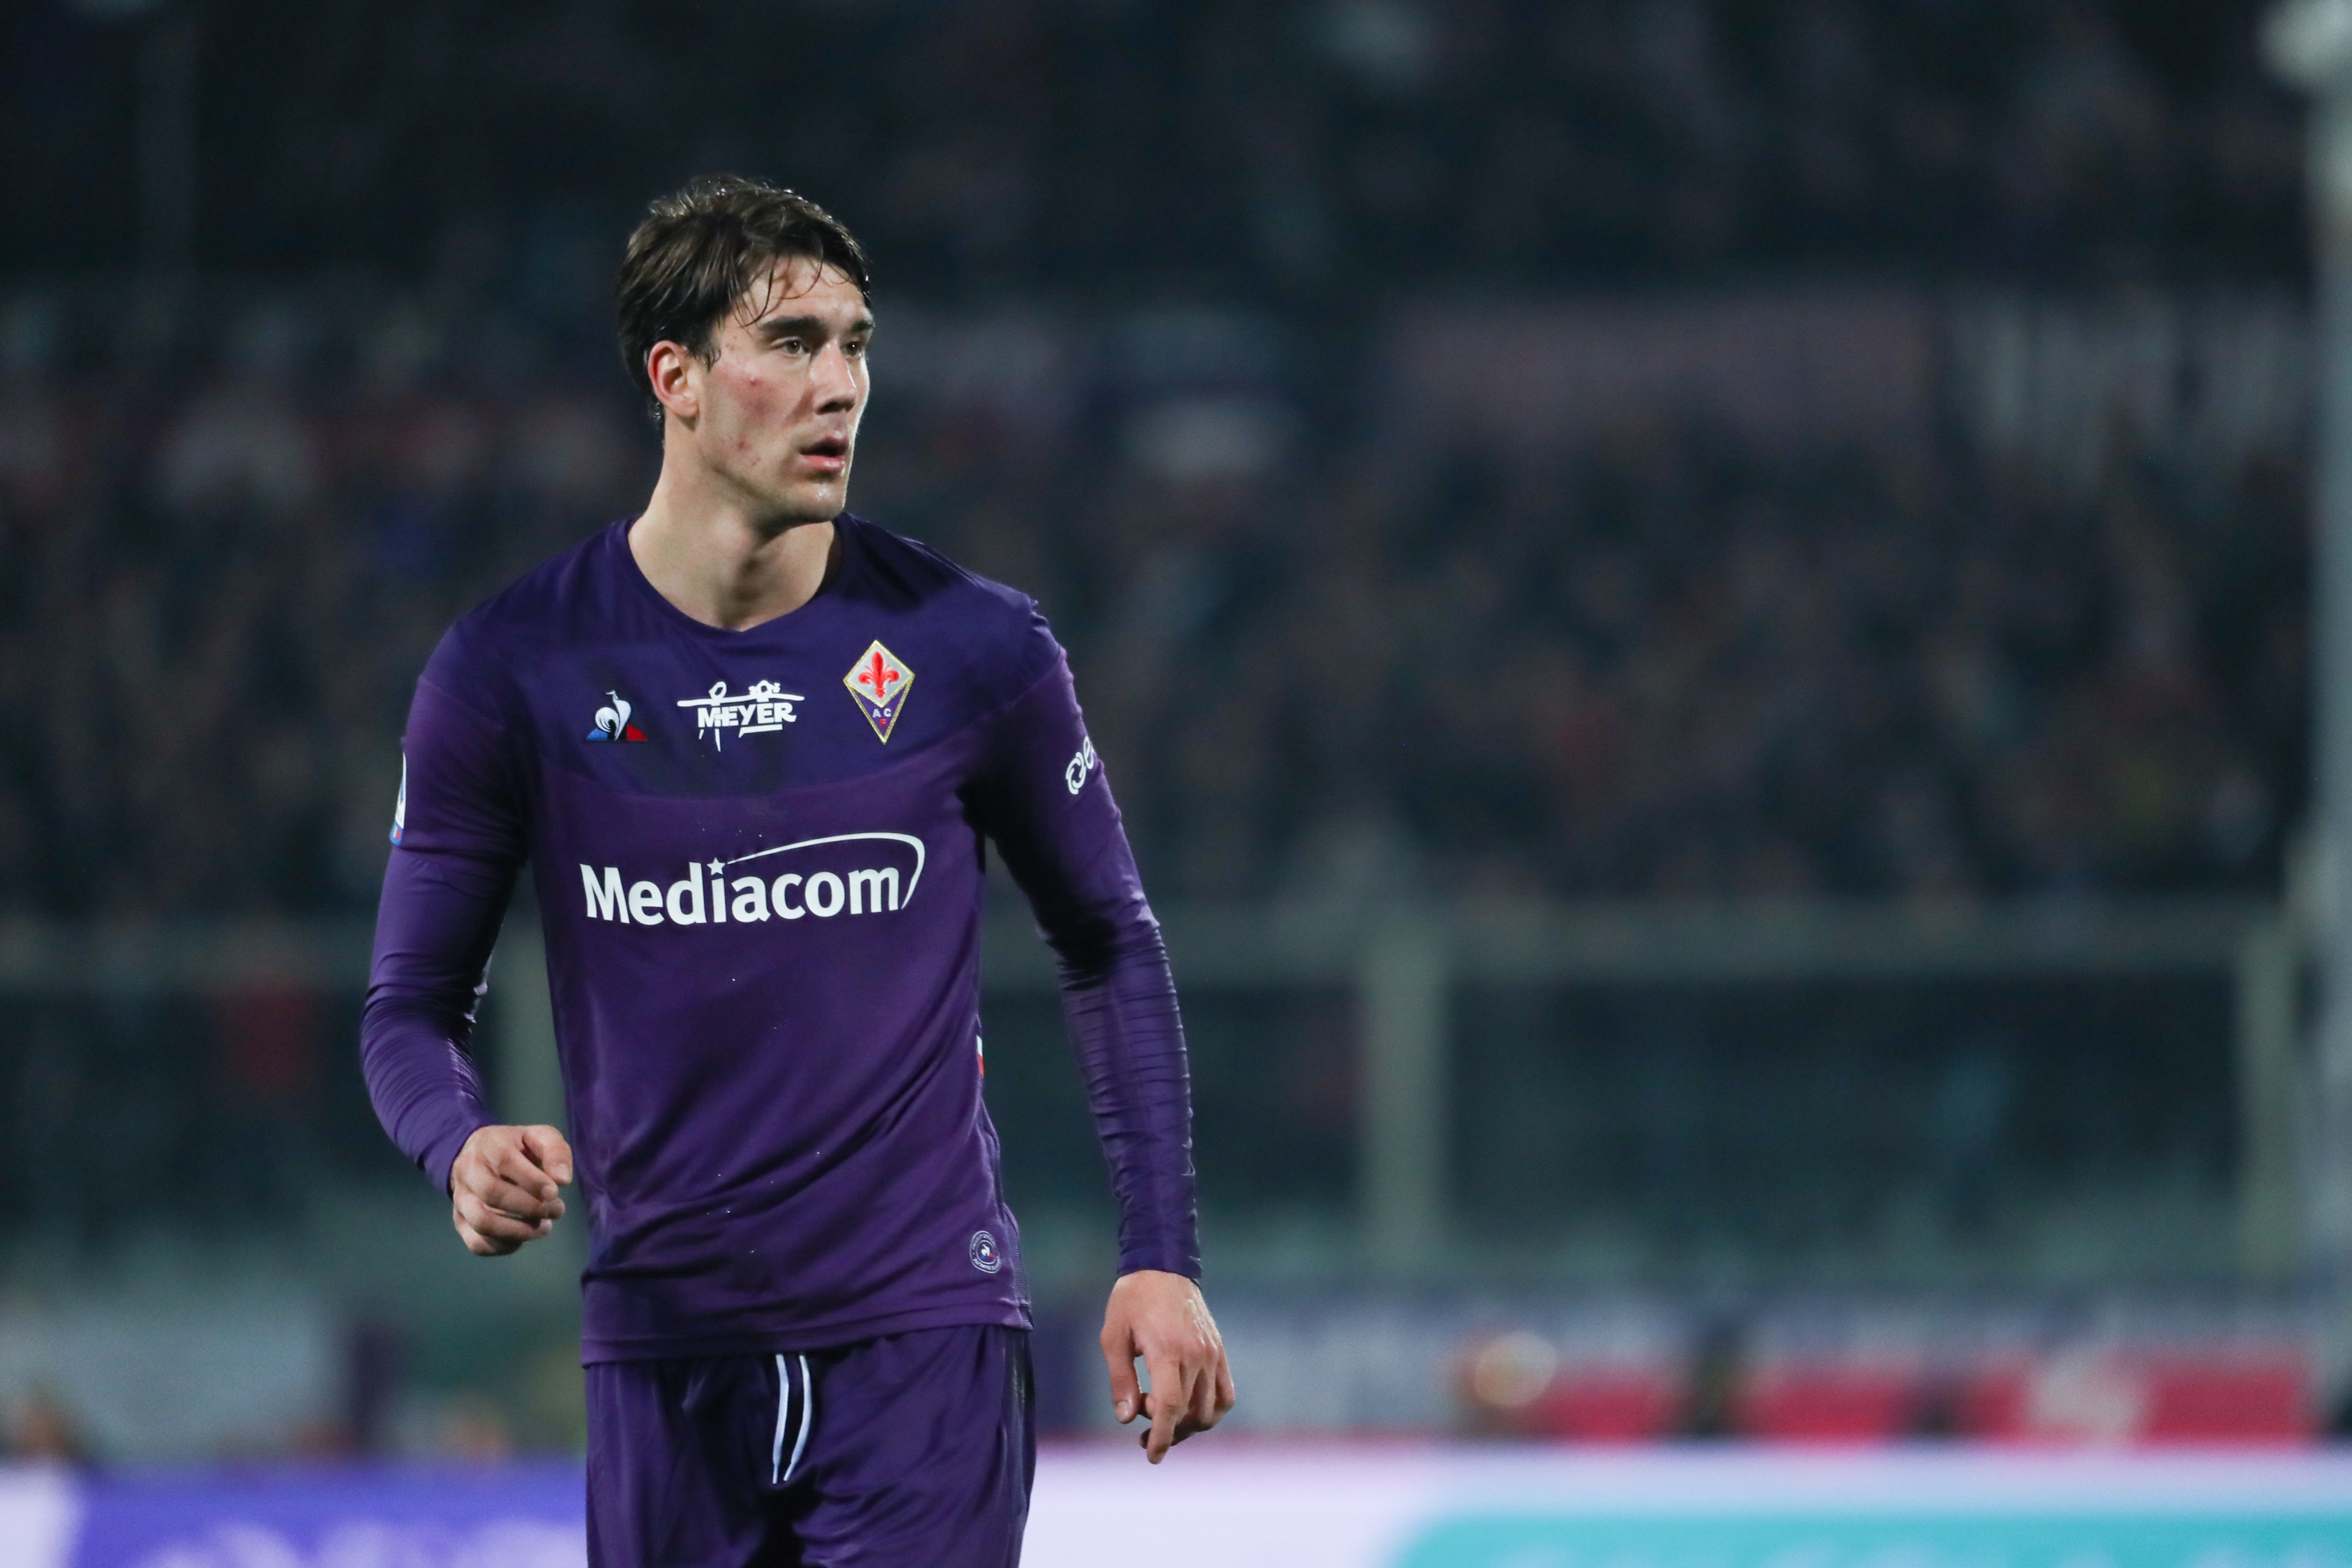 ESQUENTOU - Cogitado para deixar a Fiorentina ao fim do seu contrato, Dusan Vlahovic deve assinar com a Juventus de graça ou por meio de uma taxa de transferência. O contrato do atacante se encerra em 2023 e não irá renovar o vínculo, segundo Daniele Longo.